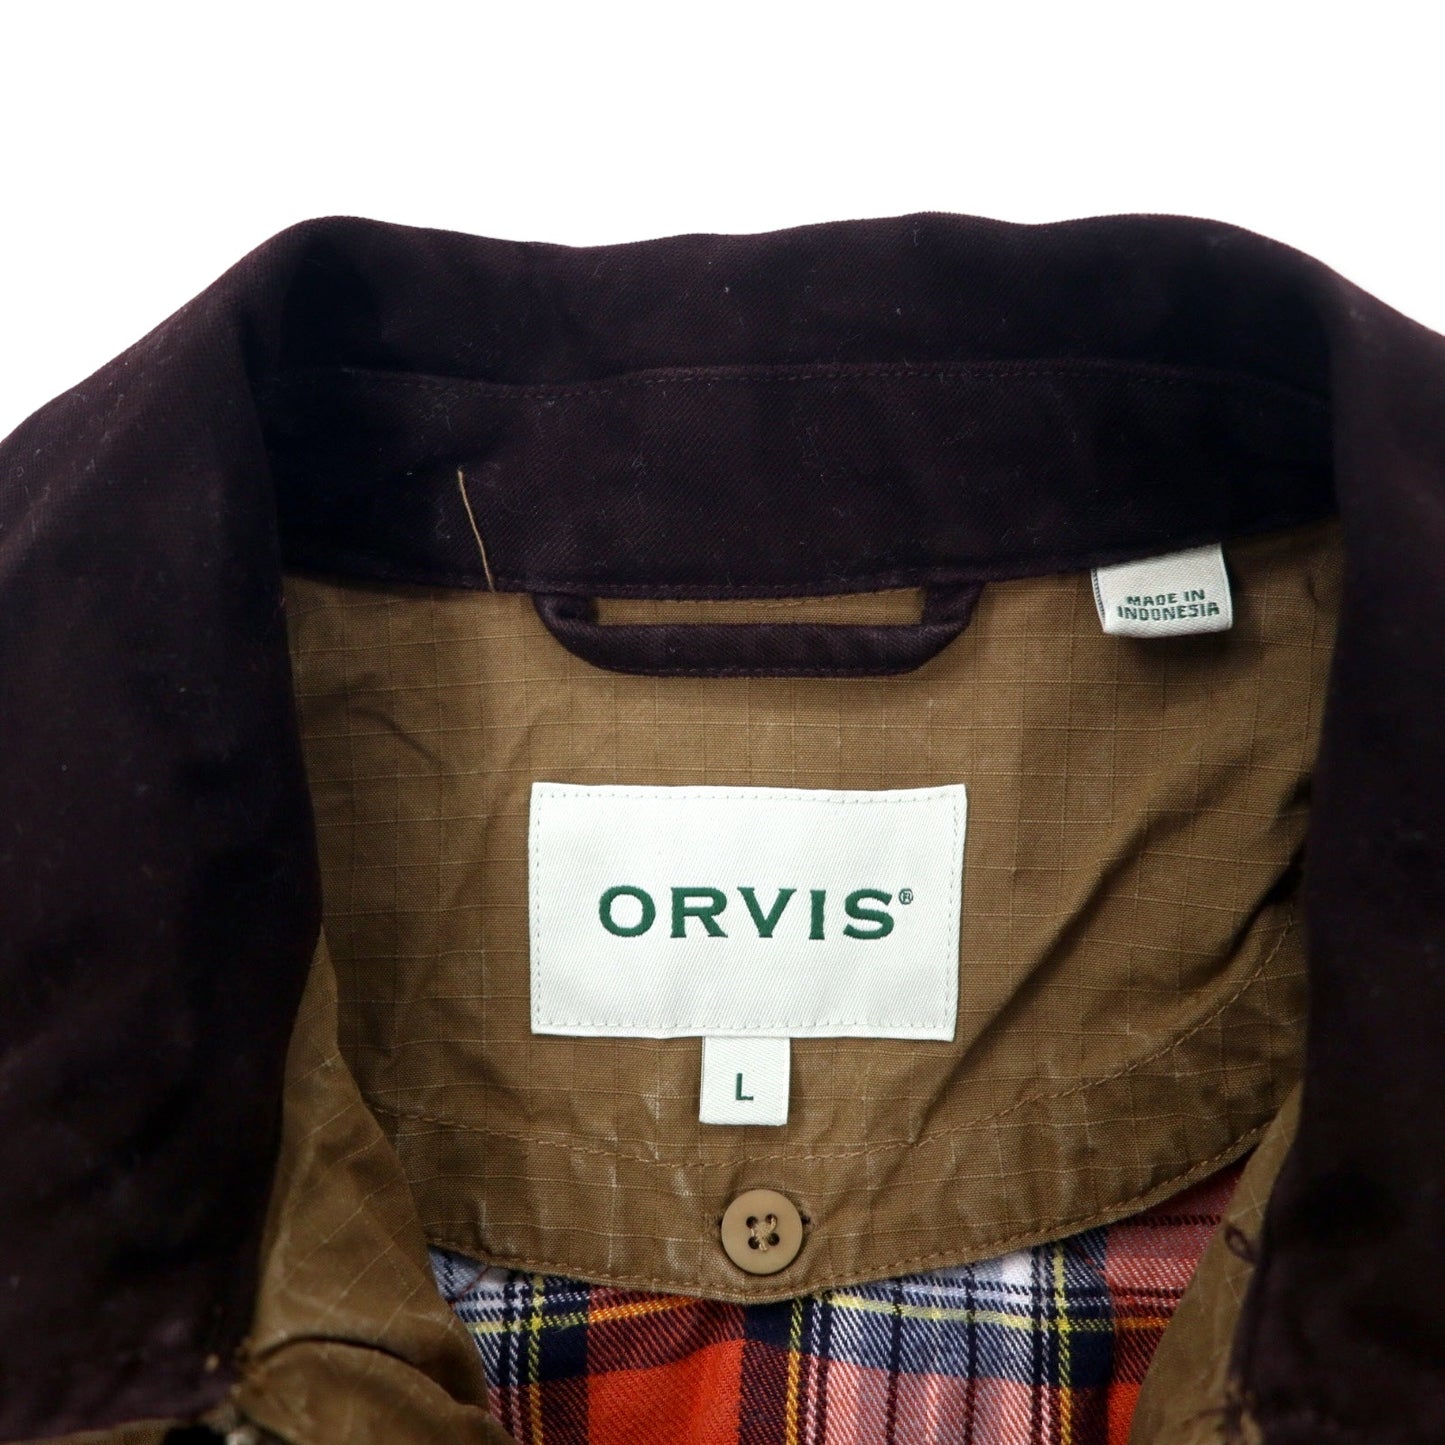 ORVIS ハンティングジャケット L カーキ コットン リップストップ ライナー着脱式